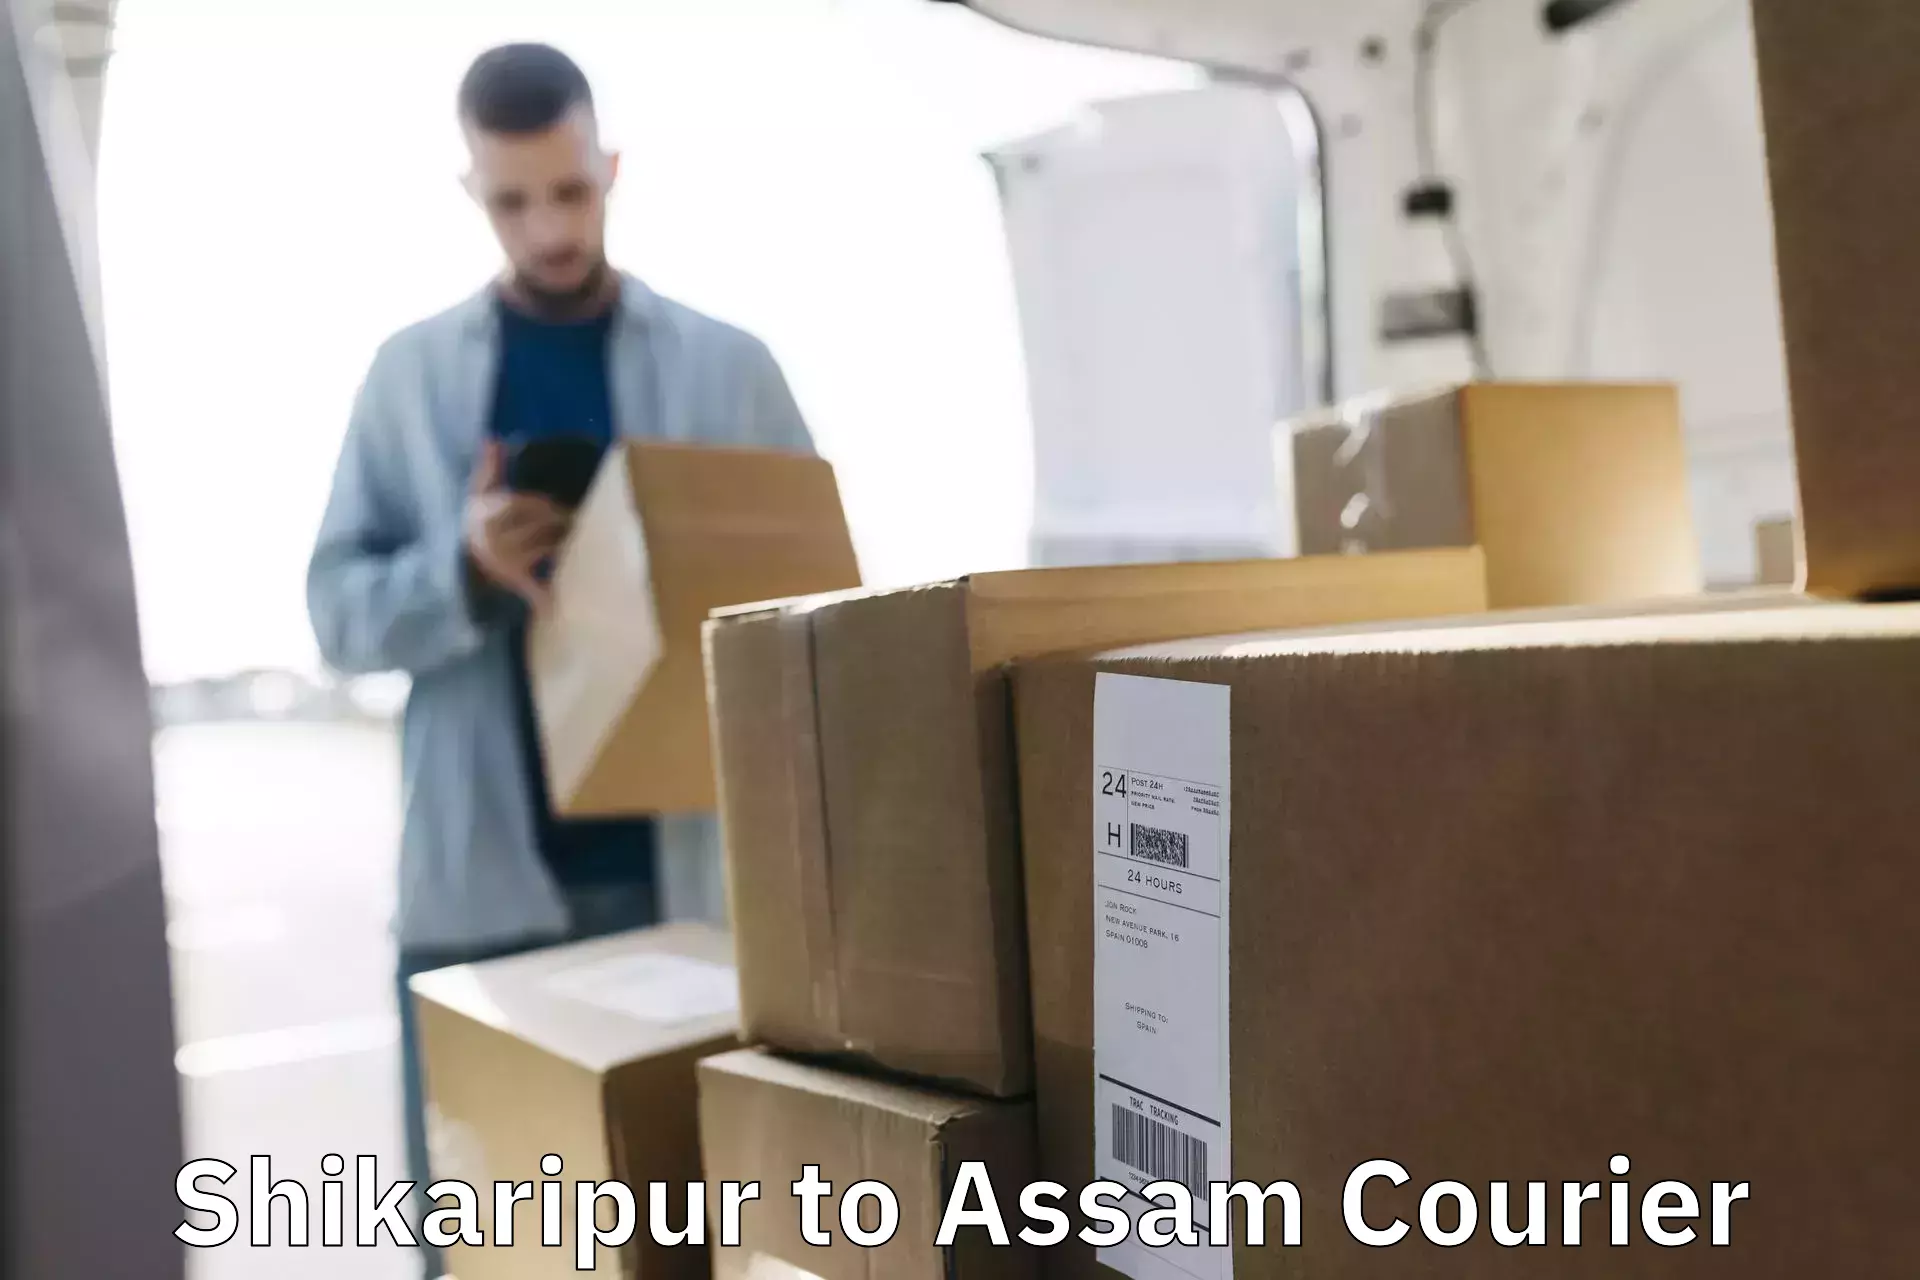 Easy return solutions Shikaripur to Assam